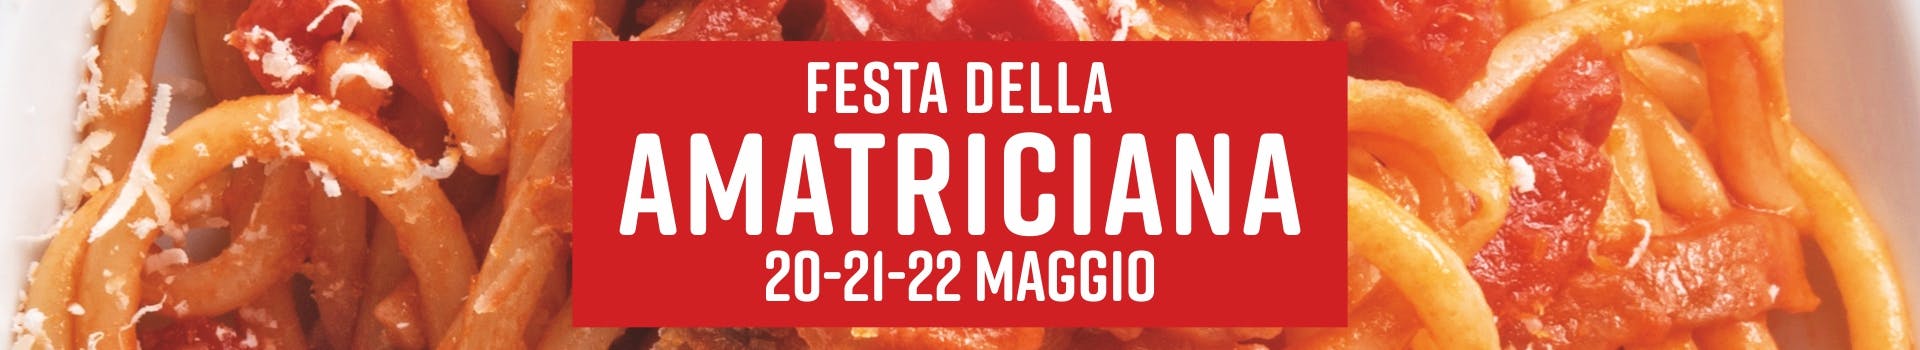 Festa della Amatriciana Eataly Roma